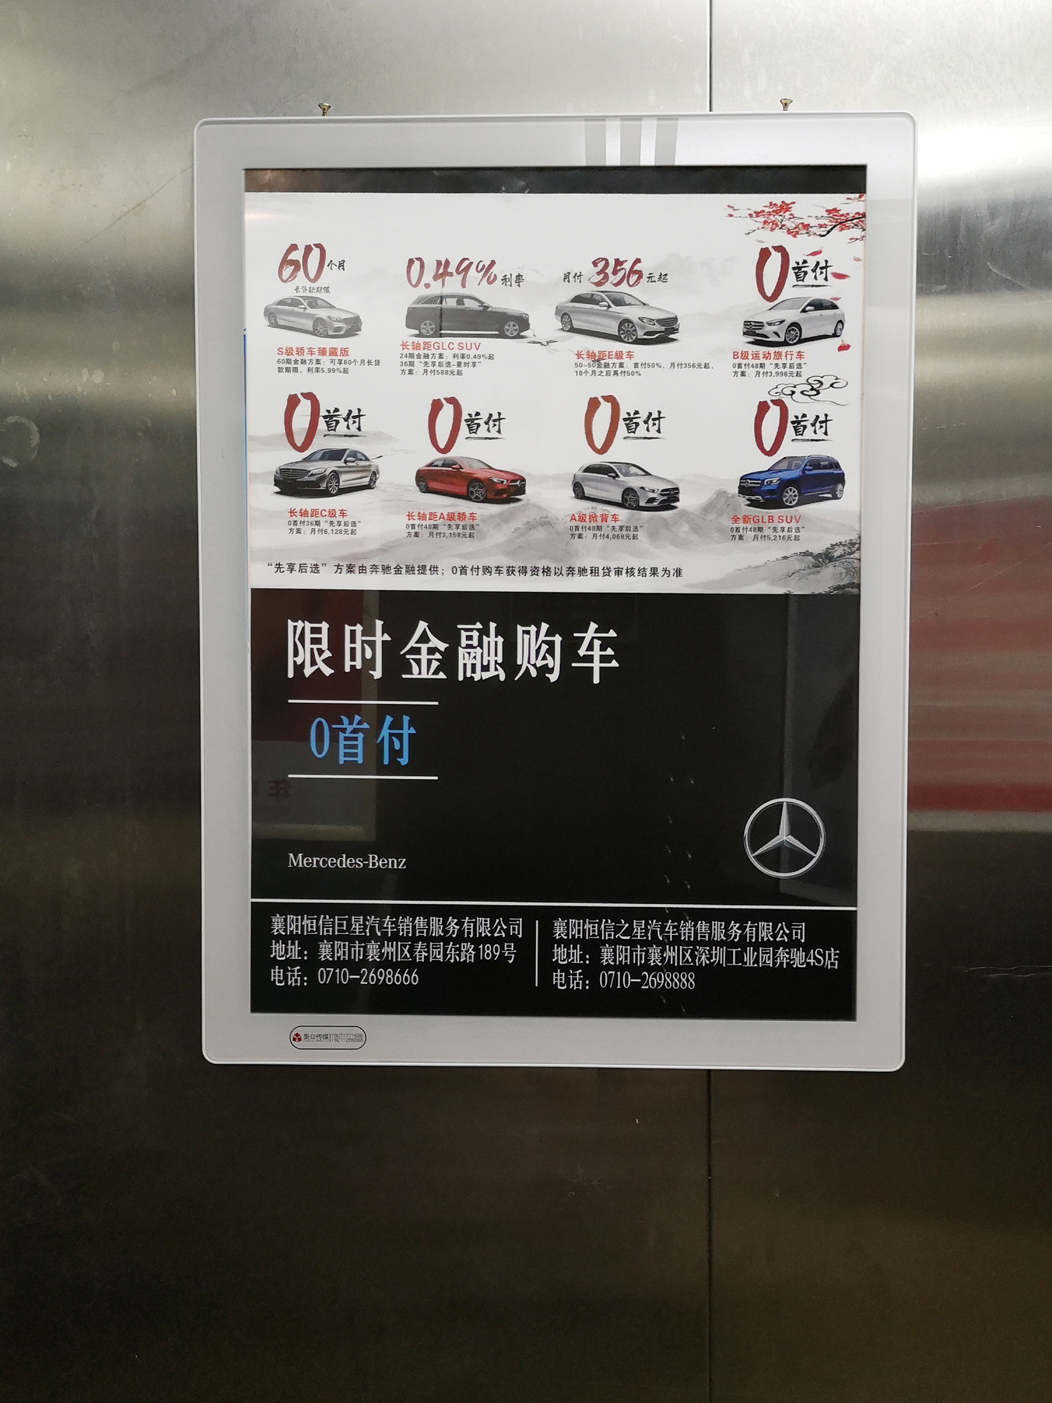  电梯广告在其他广告中有什么特点？